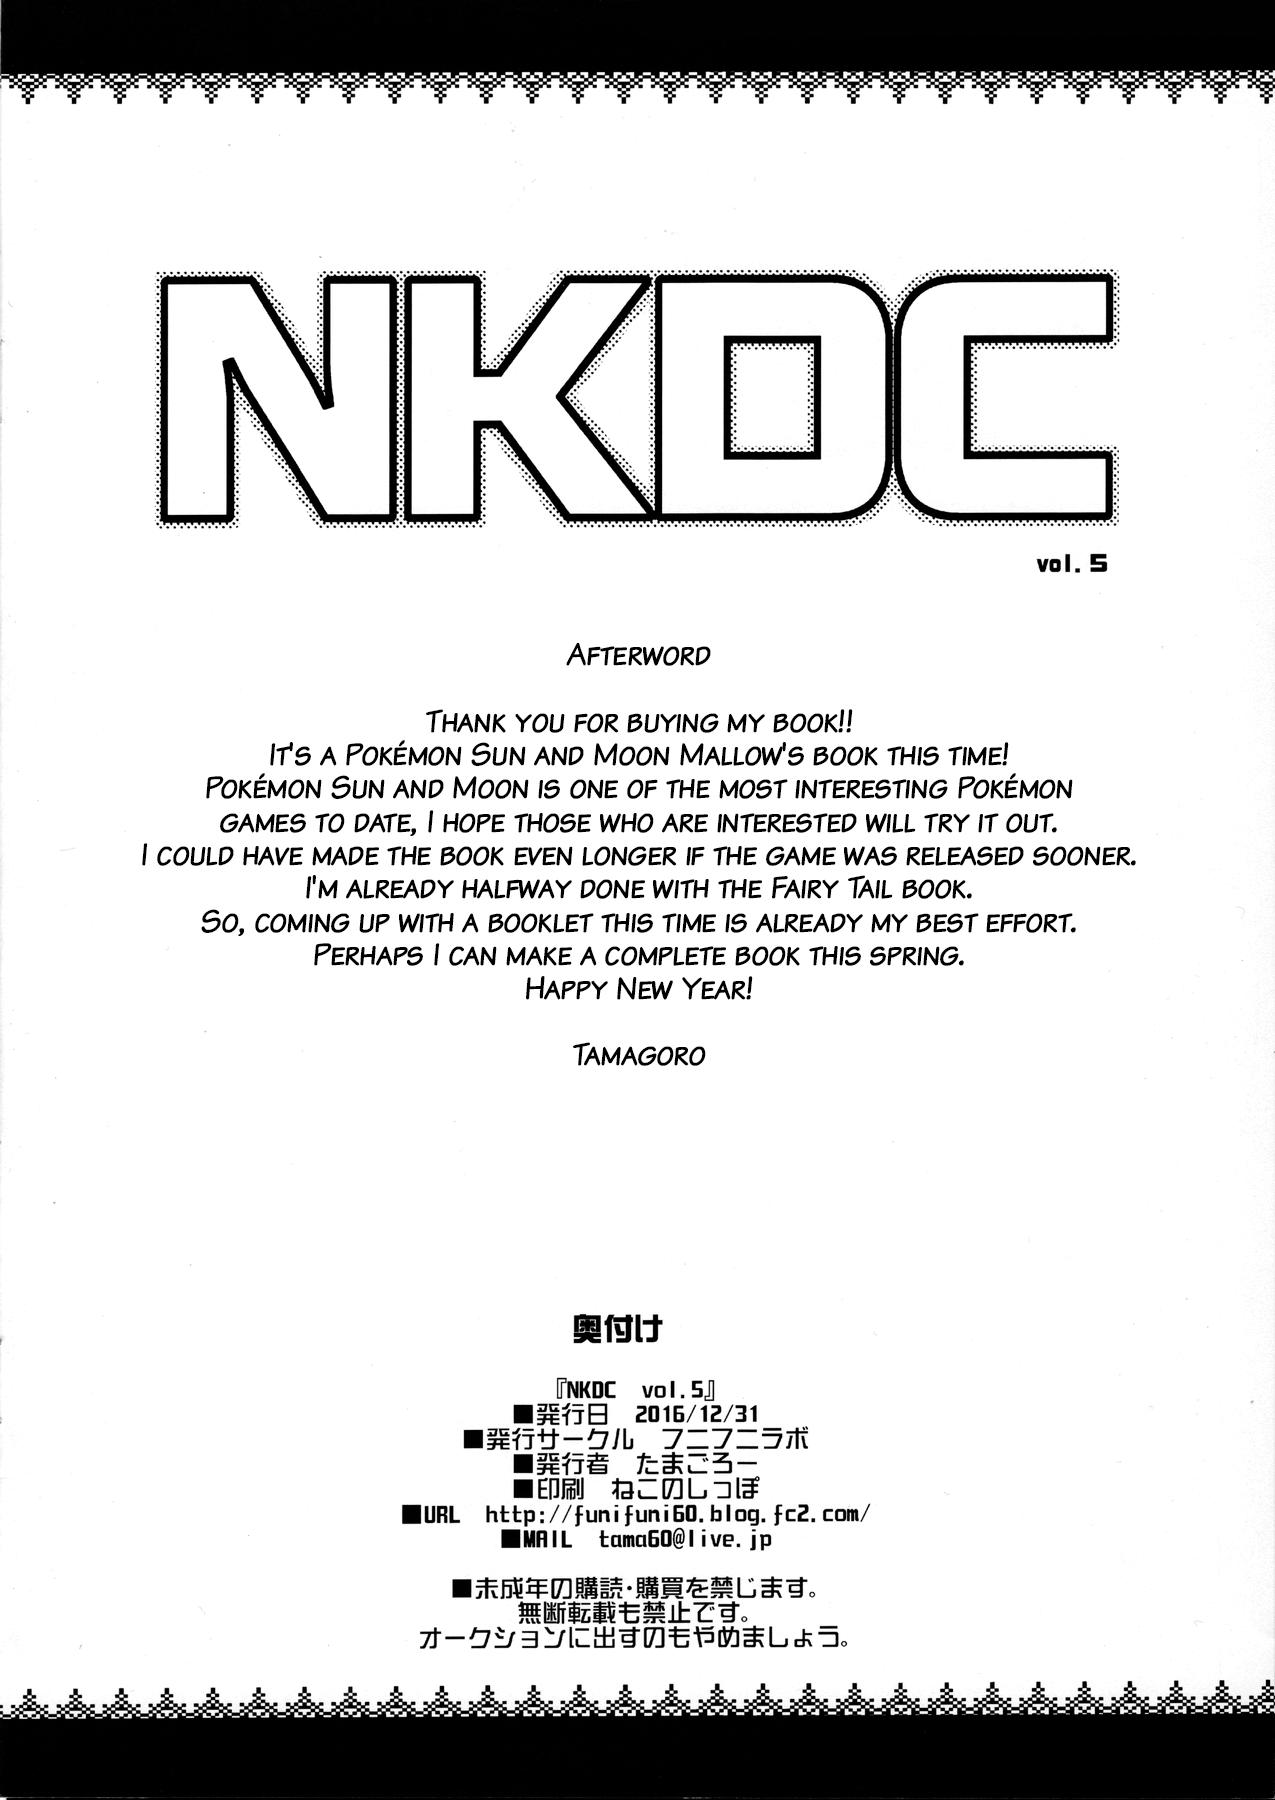 NKDC Vol. 5 8